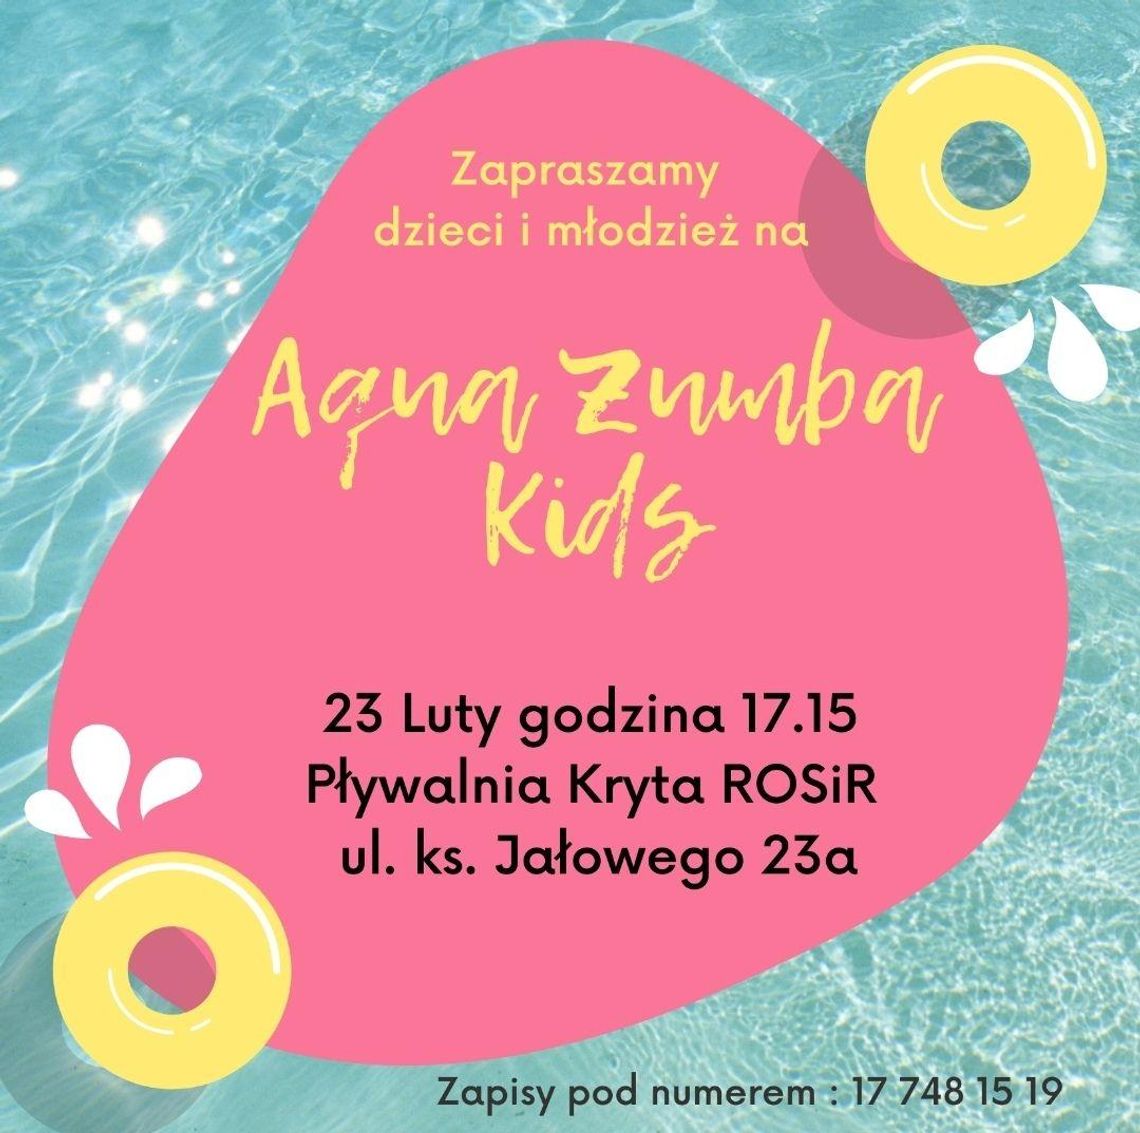 Rzeszowski Ośrodek Sportu i Rekreacji zaprasza dzieci i młodzież na zajęcia Aqua Zumba Kids.